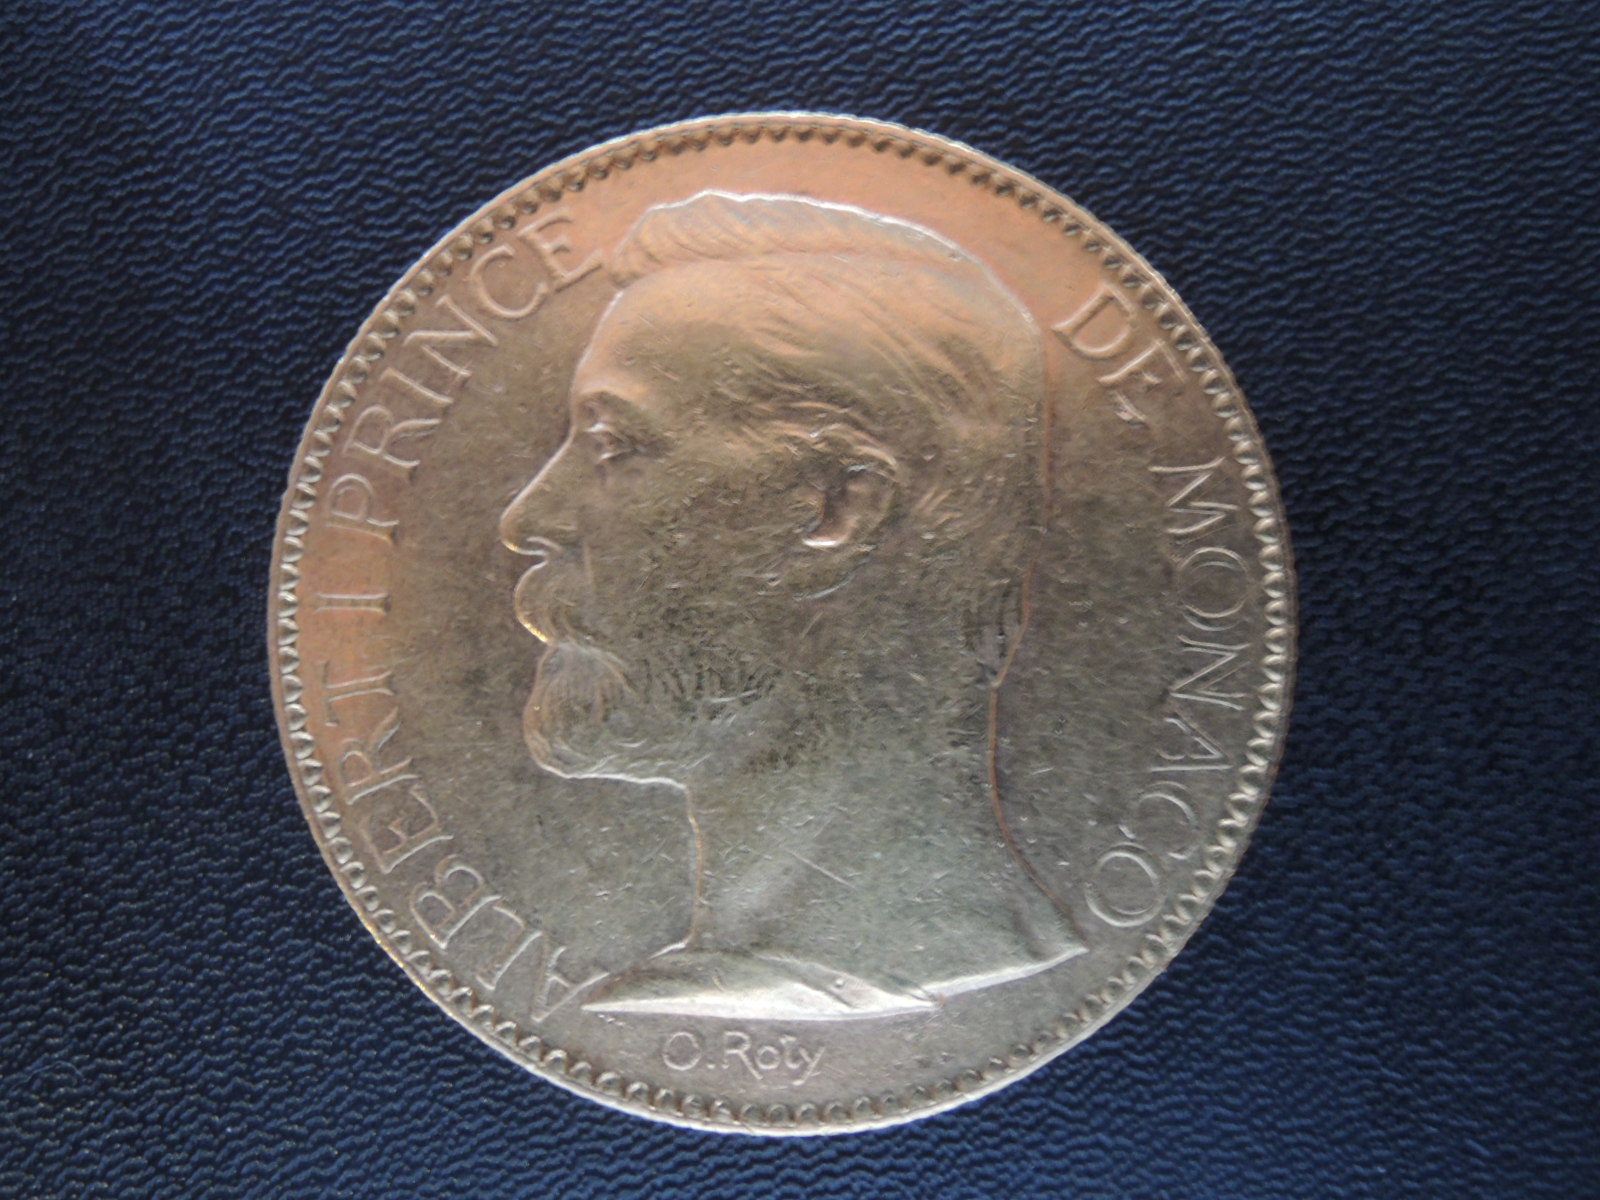 Moneta złota 100 Franków 1891 rok - Księstwo Monaco.